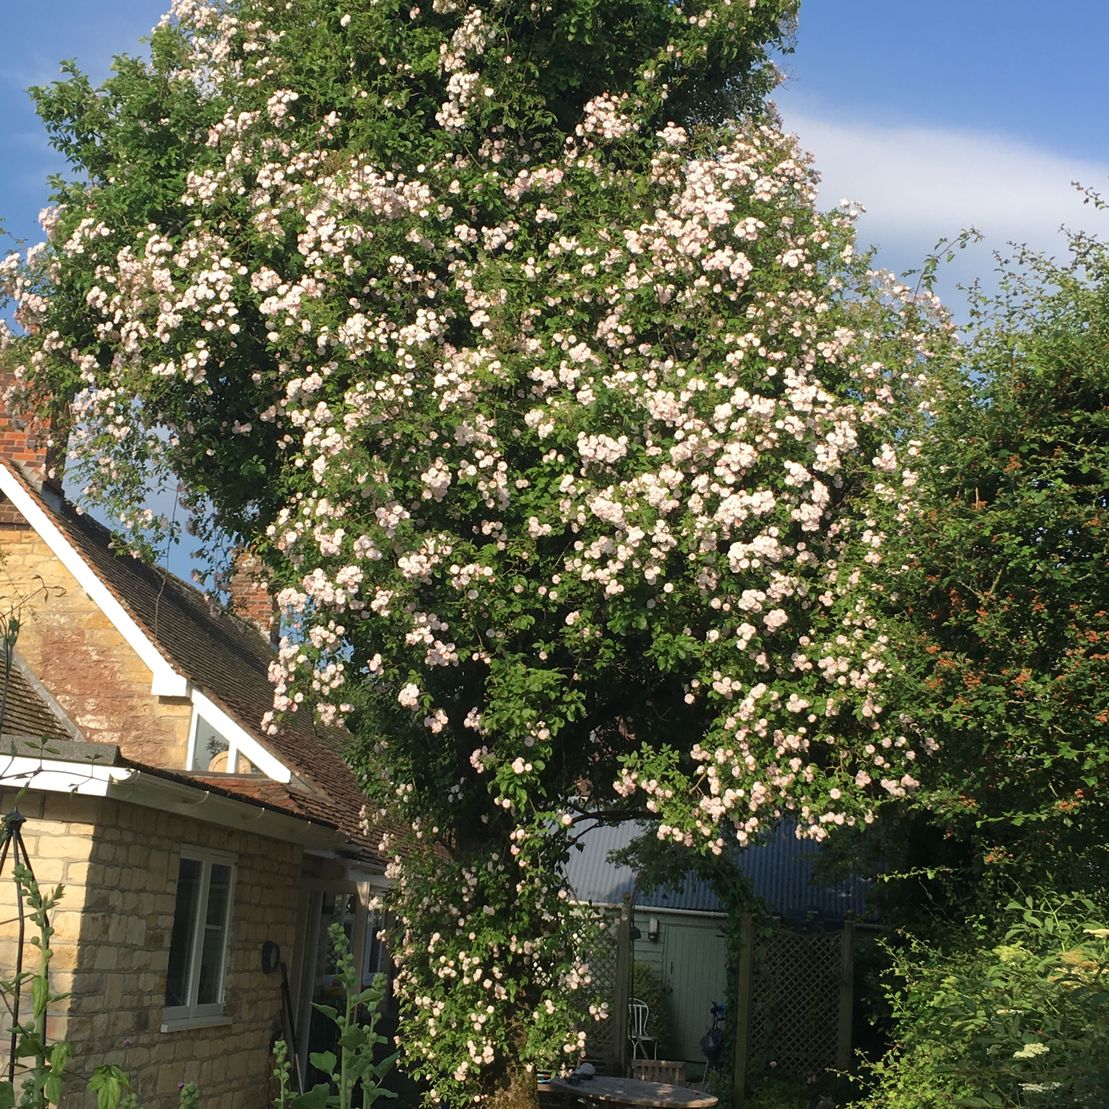 Flower tree in garden